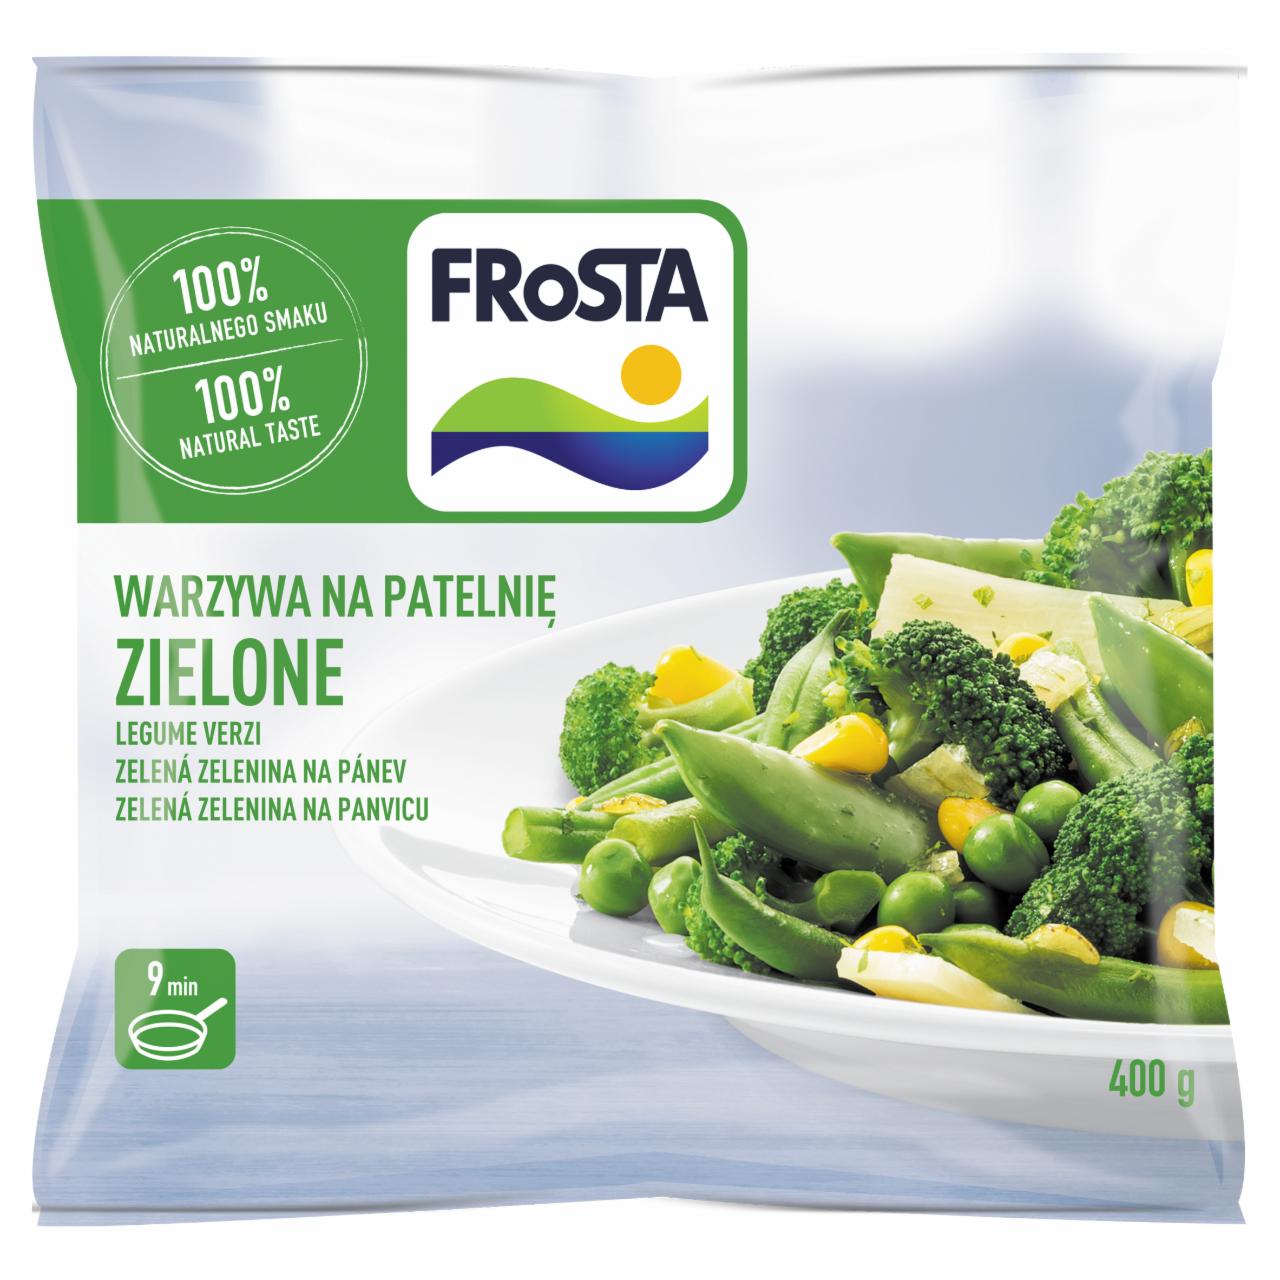 Фото - Заморожённые зелёные овощи FRoSTA